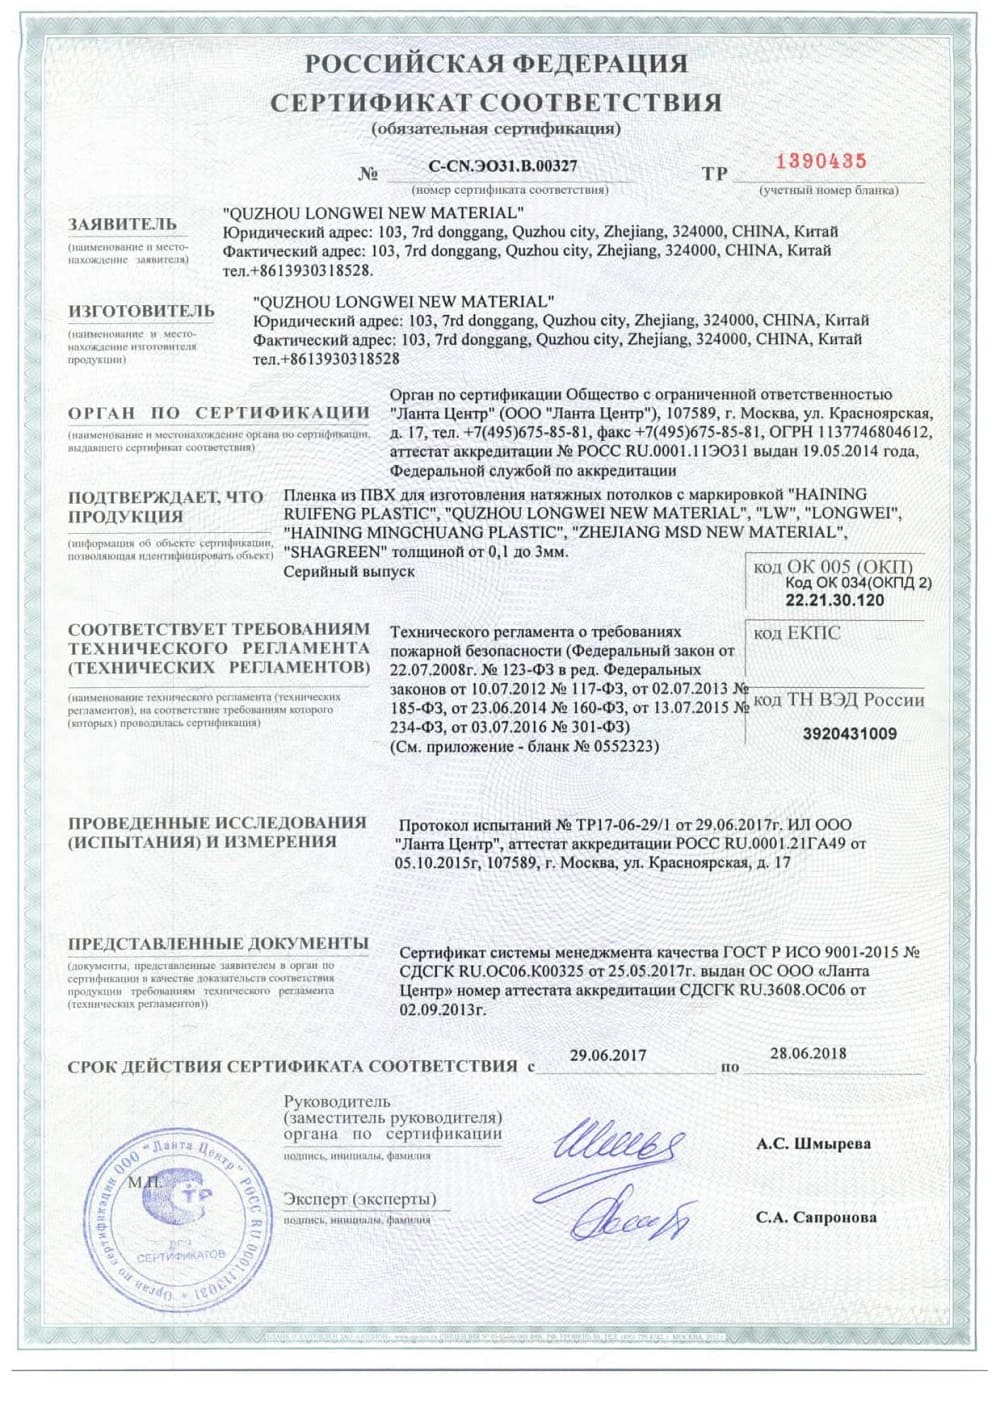 Сертификат соответствия на натяжные полотна компании Алези